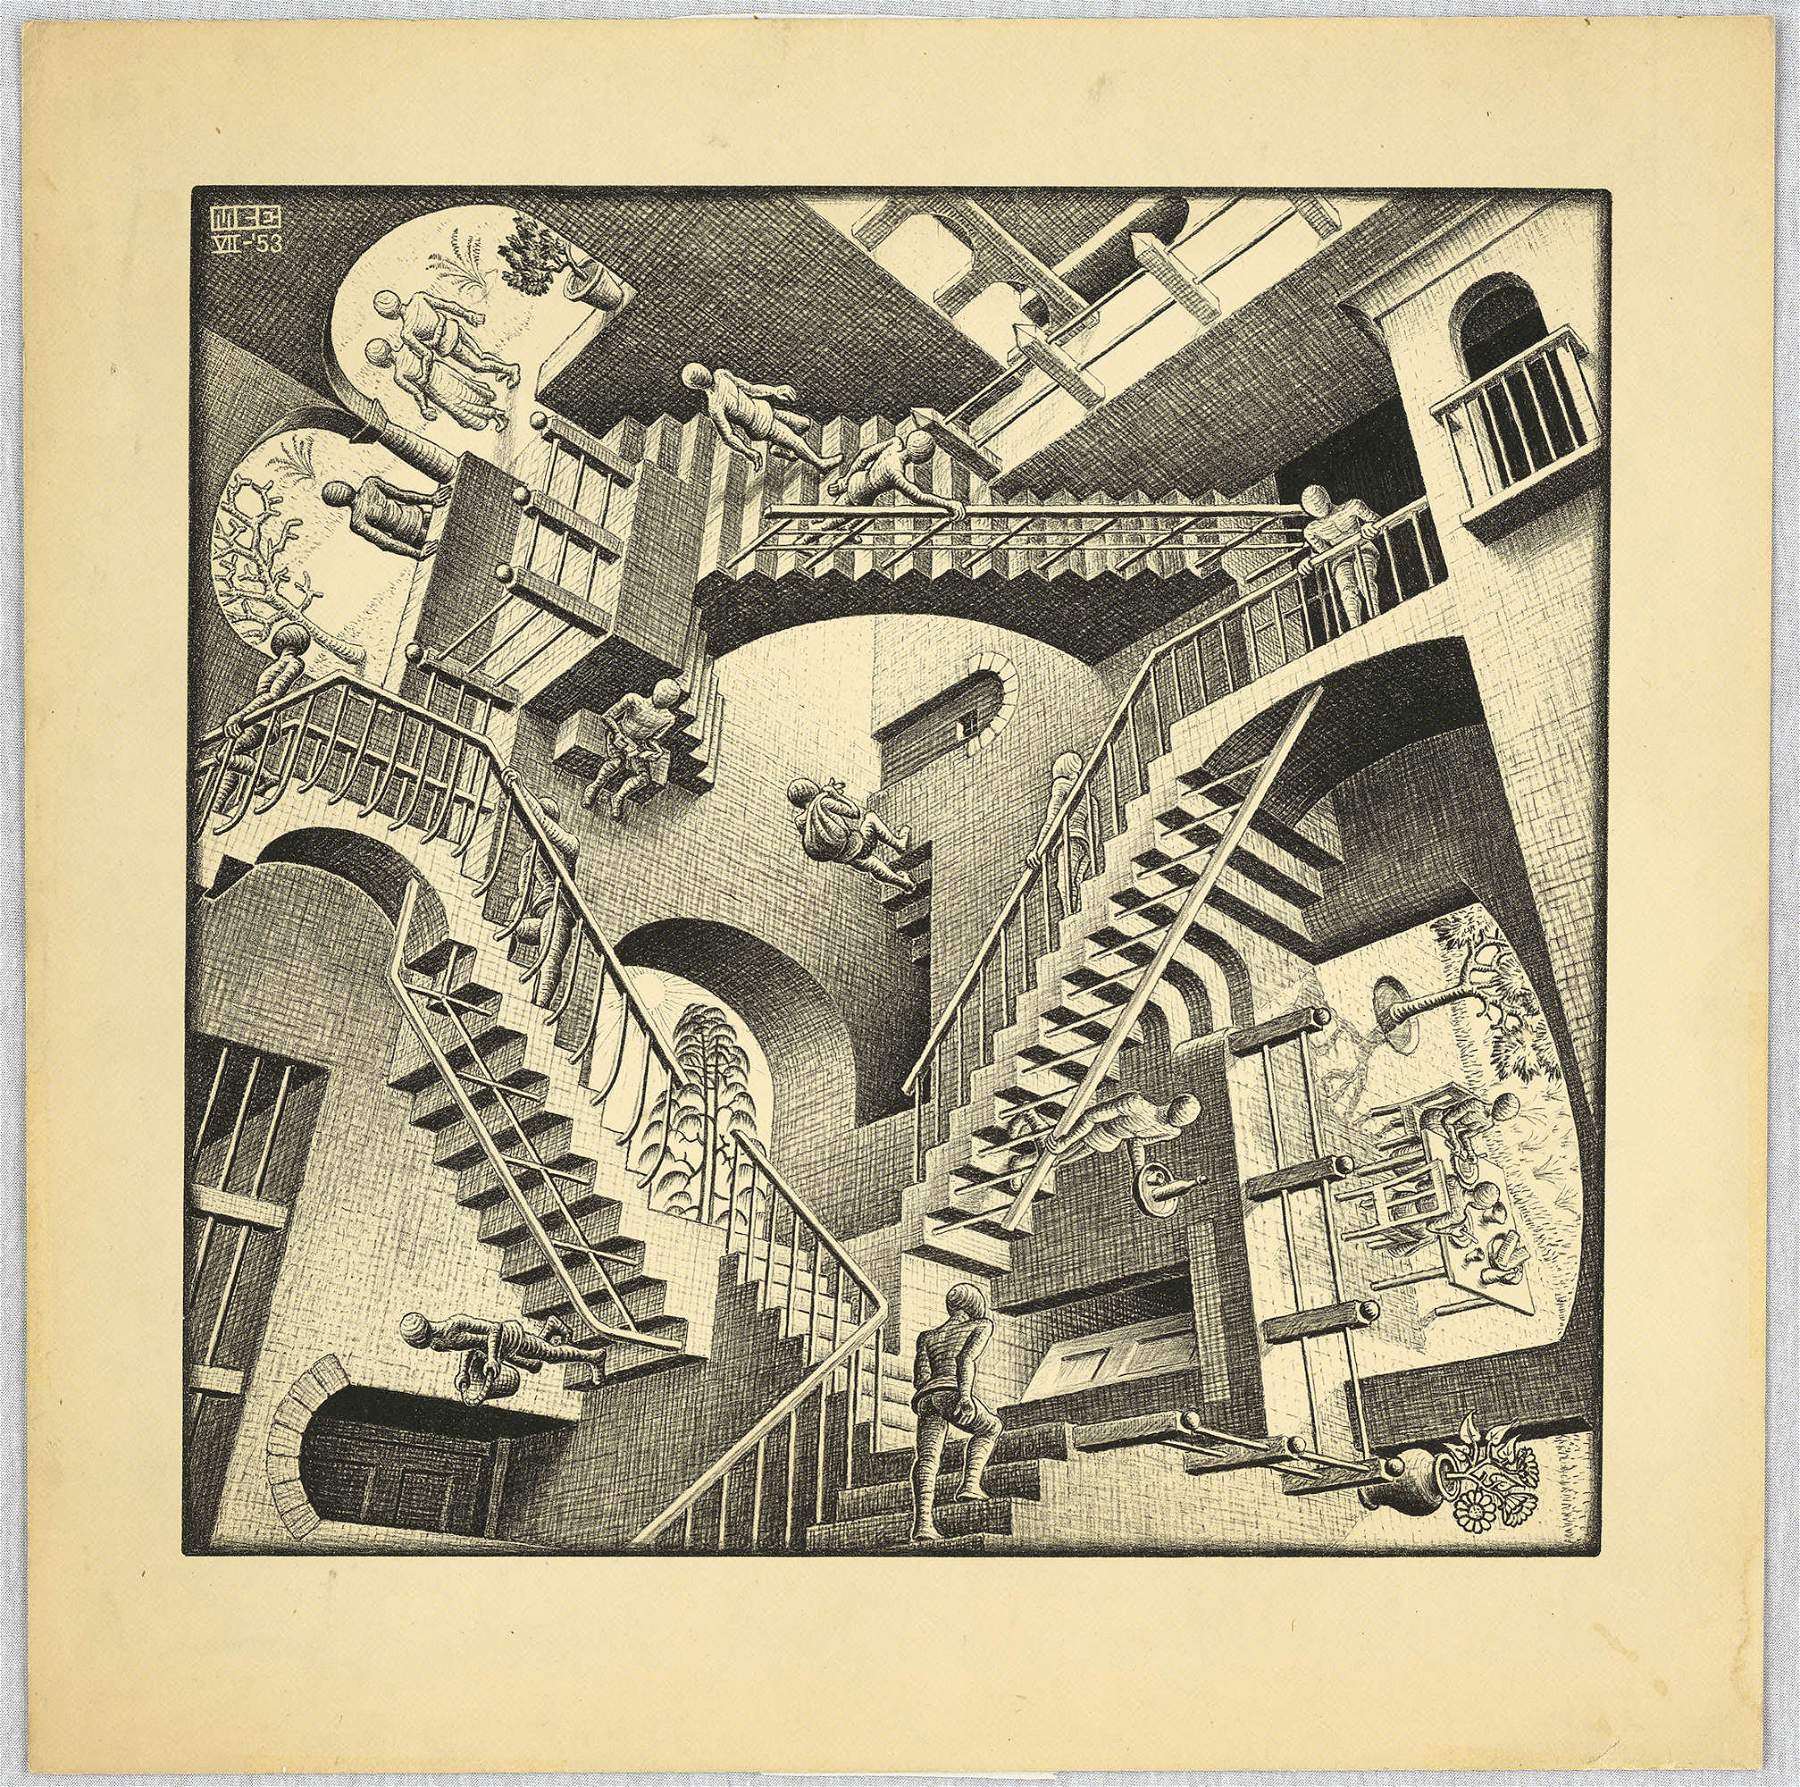 Maurits Cornelis Escher, Relatività (1953; Litografia, 277x292 mm; Collezione M.C. Escher Foundation, Paesi Bassi) © 2023 The M.C. Escher Company. Tutti i diritti riservati www.mcescher.com